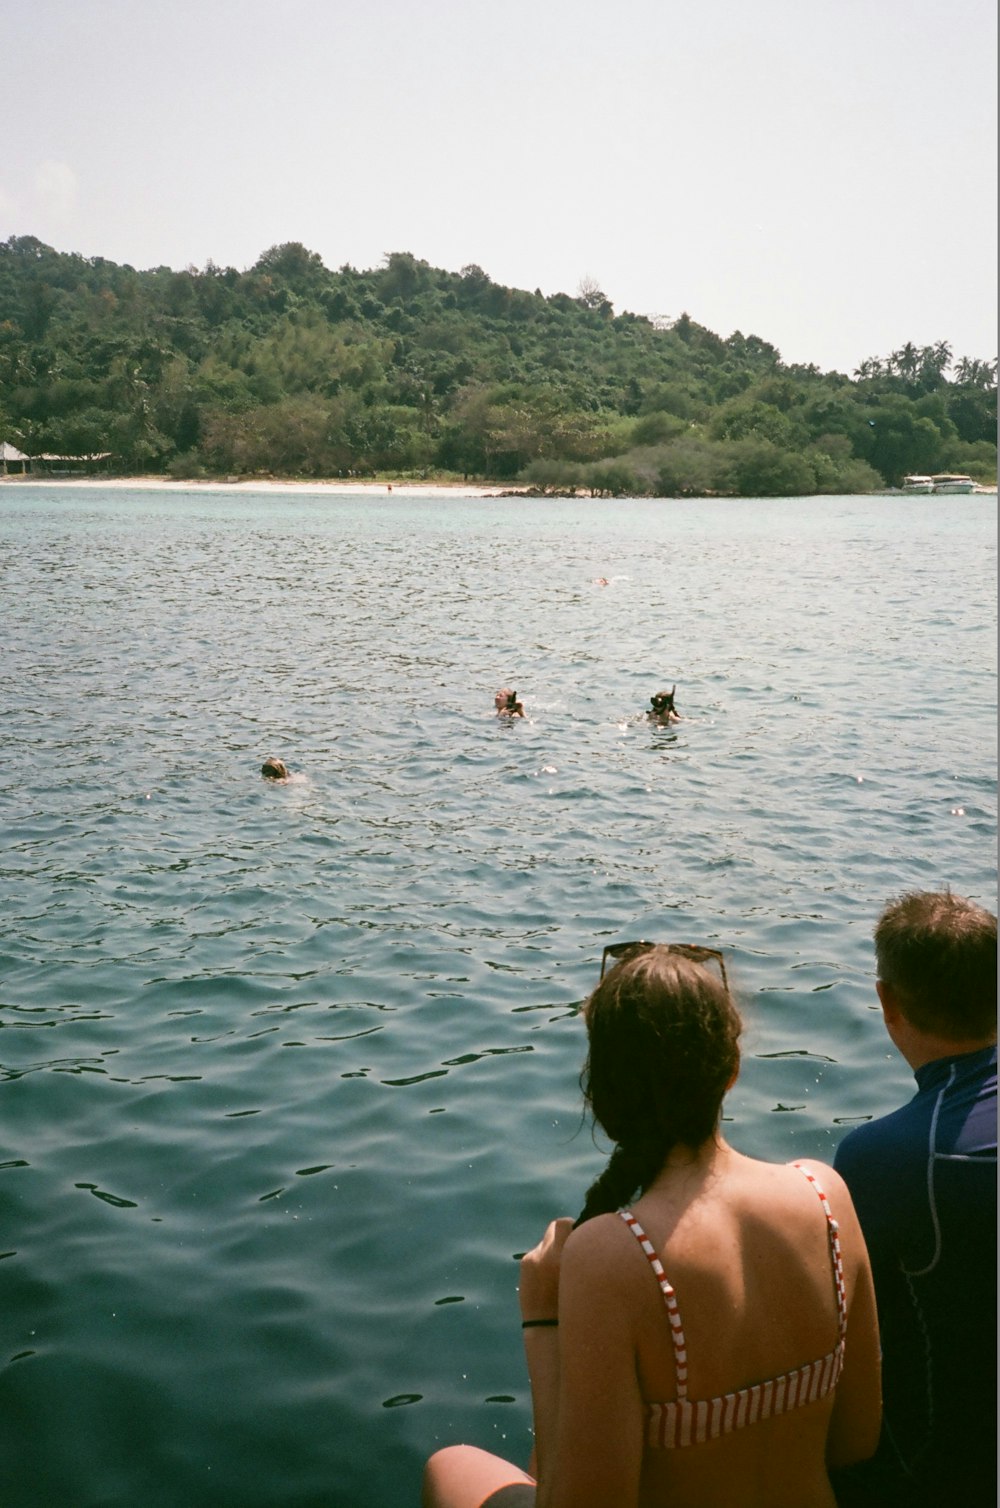 people swimming on lake during daytime